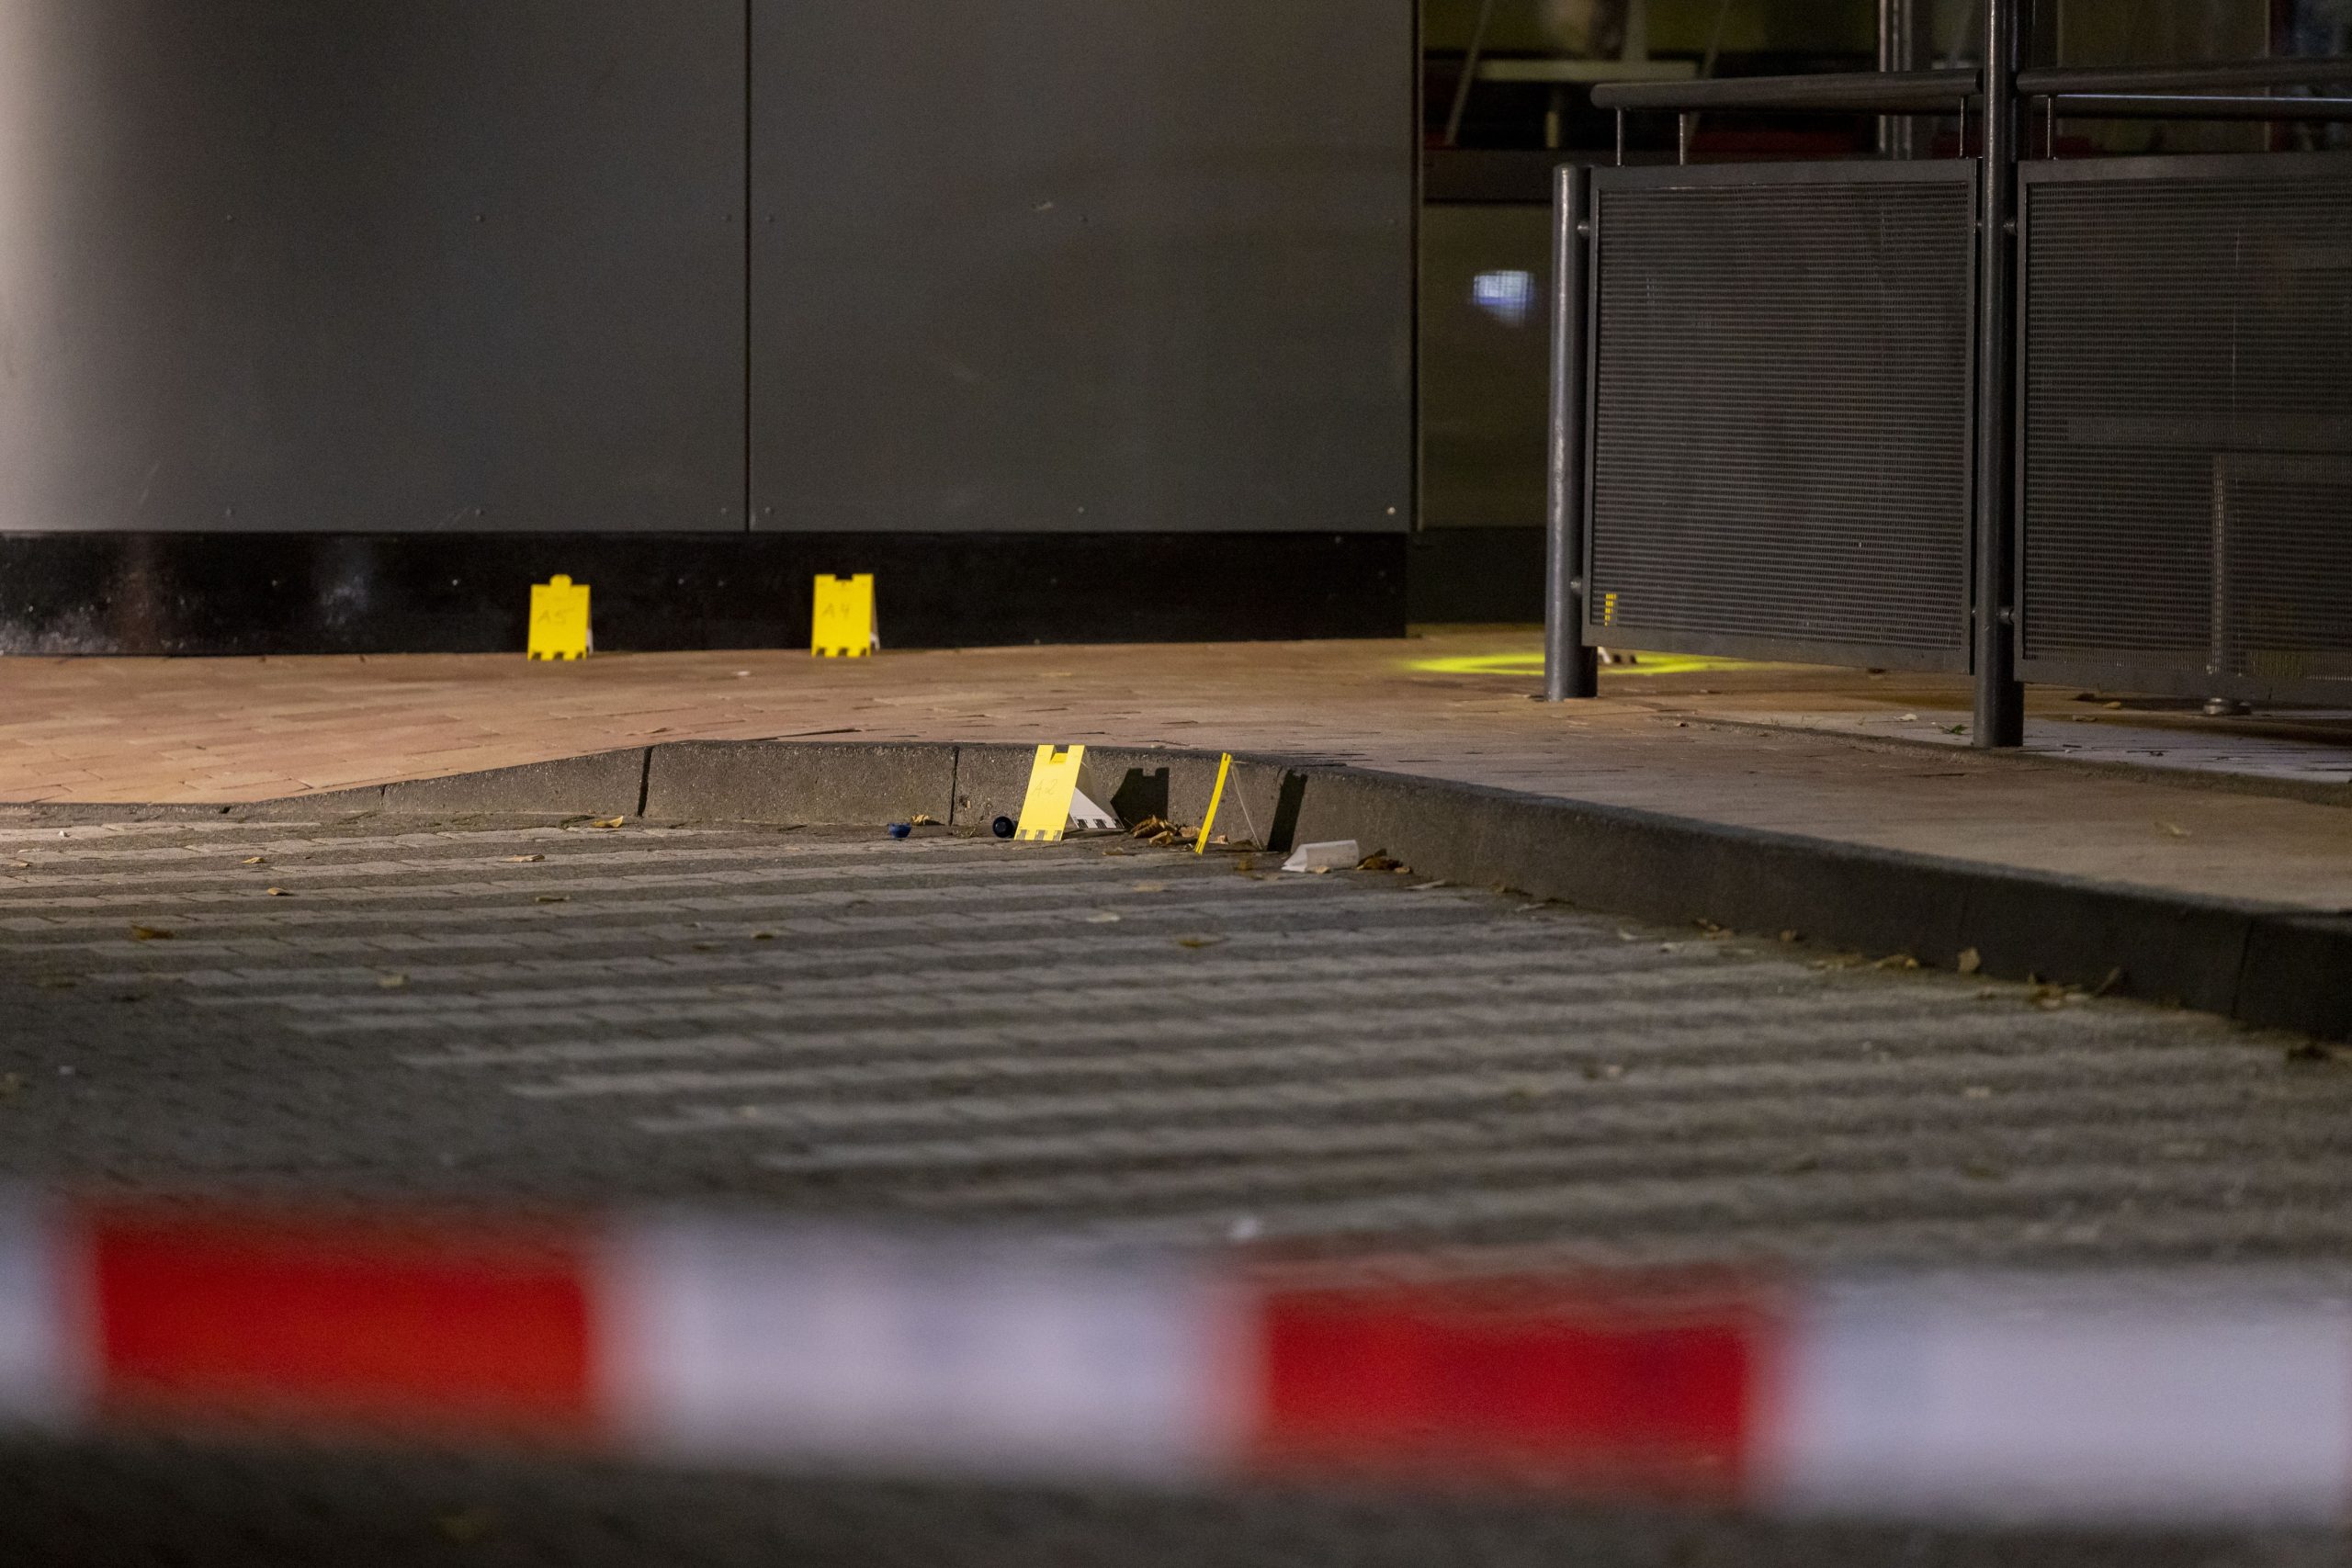 Schüsse vor Fast-Food-Restaurant in Oberhausen - drei Verletzte